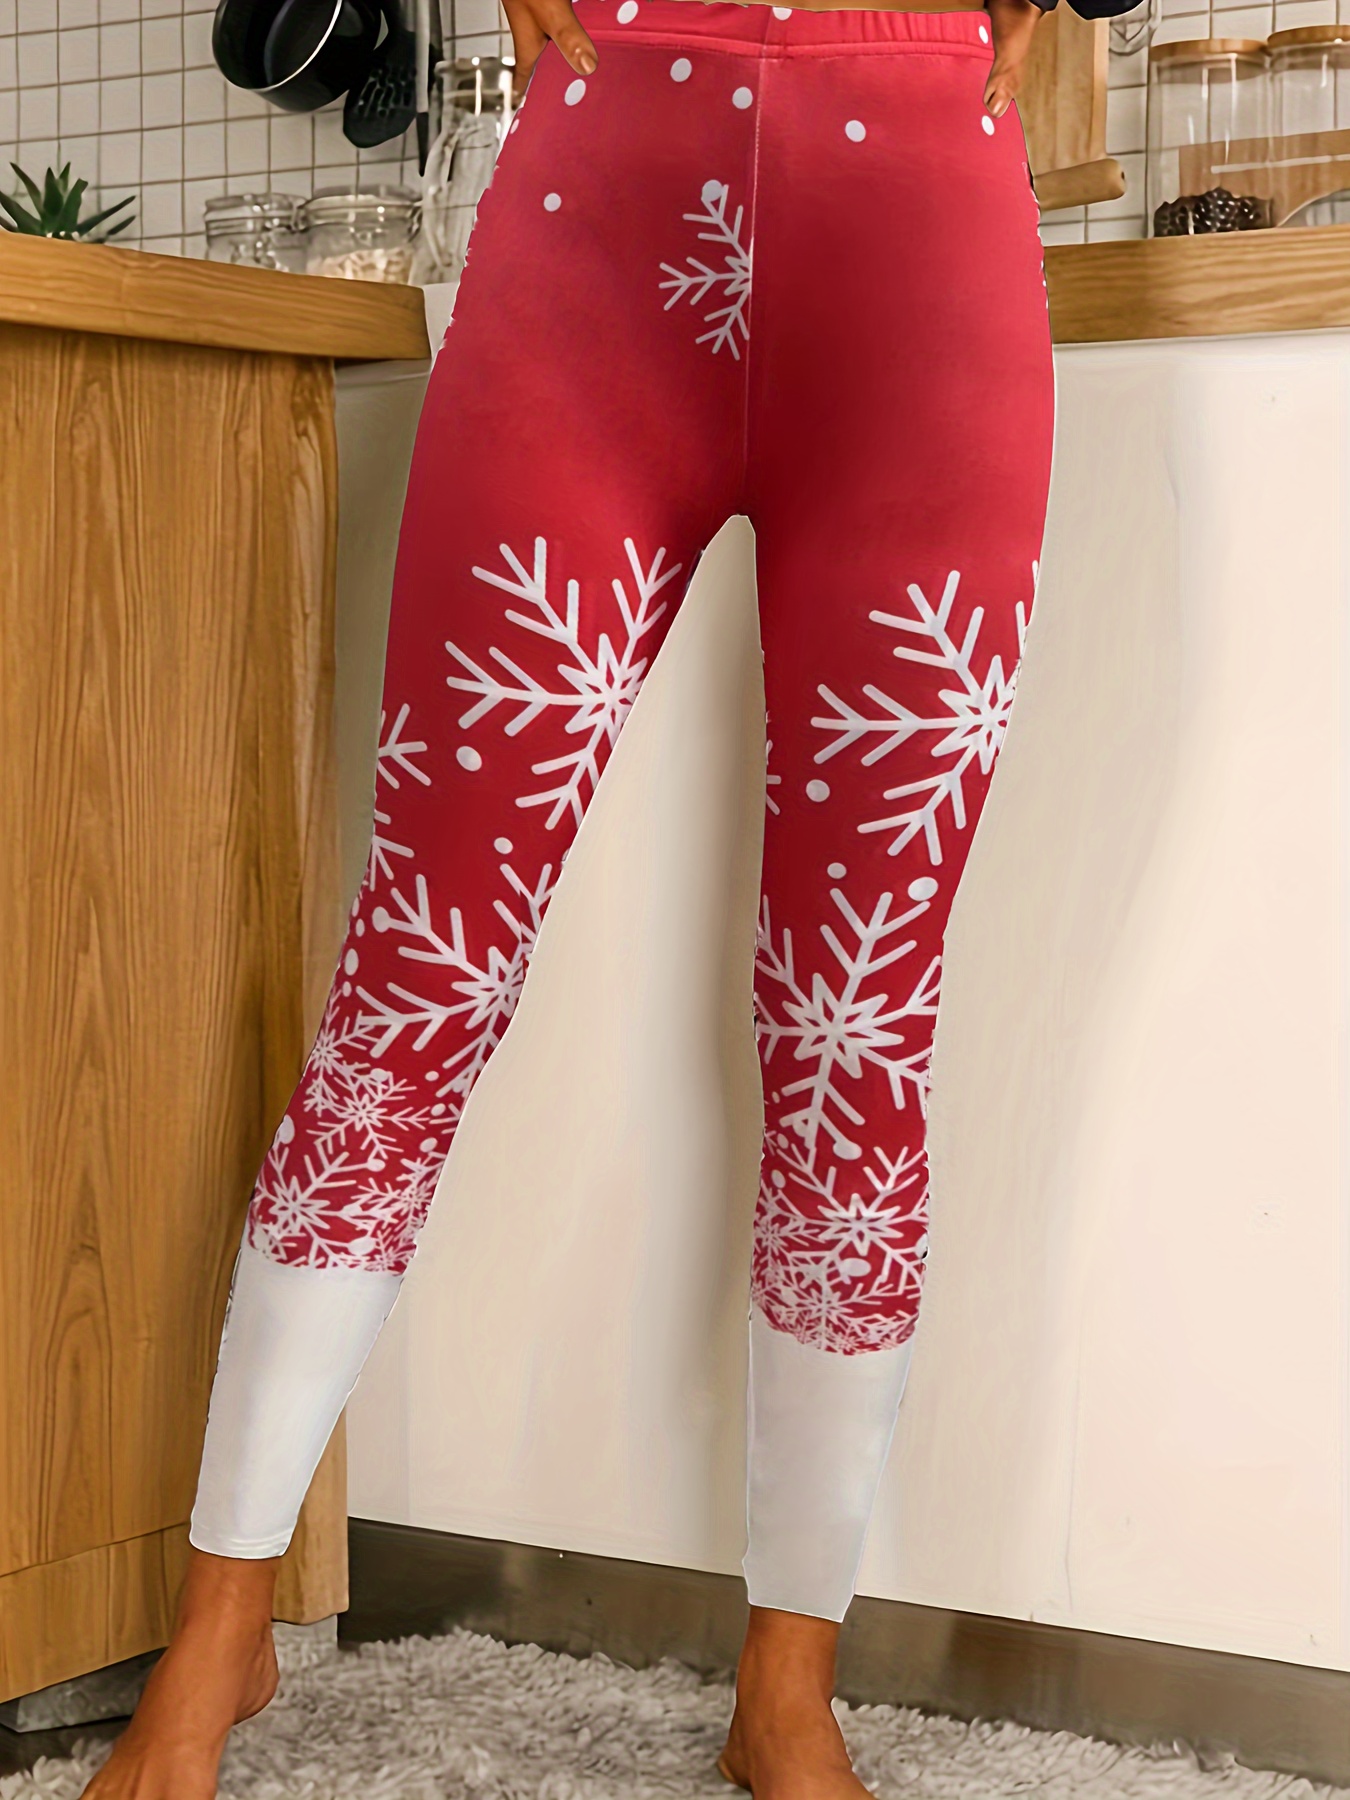 KYKU-Leggings de Navidad para mujer, pantalones con estampado